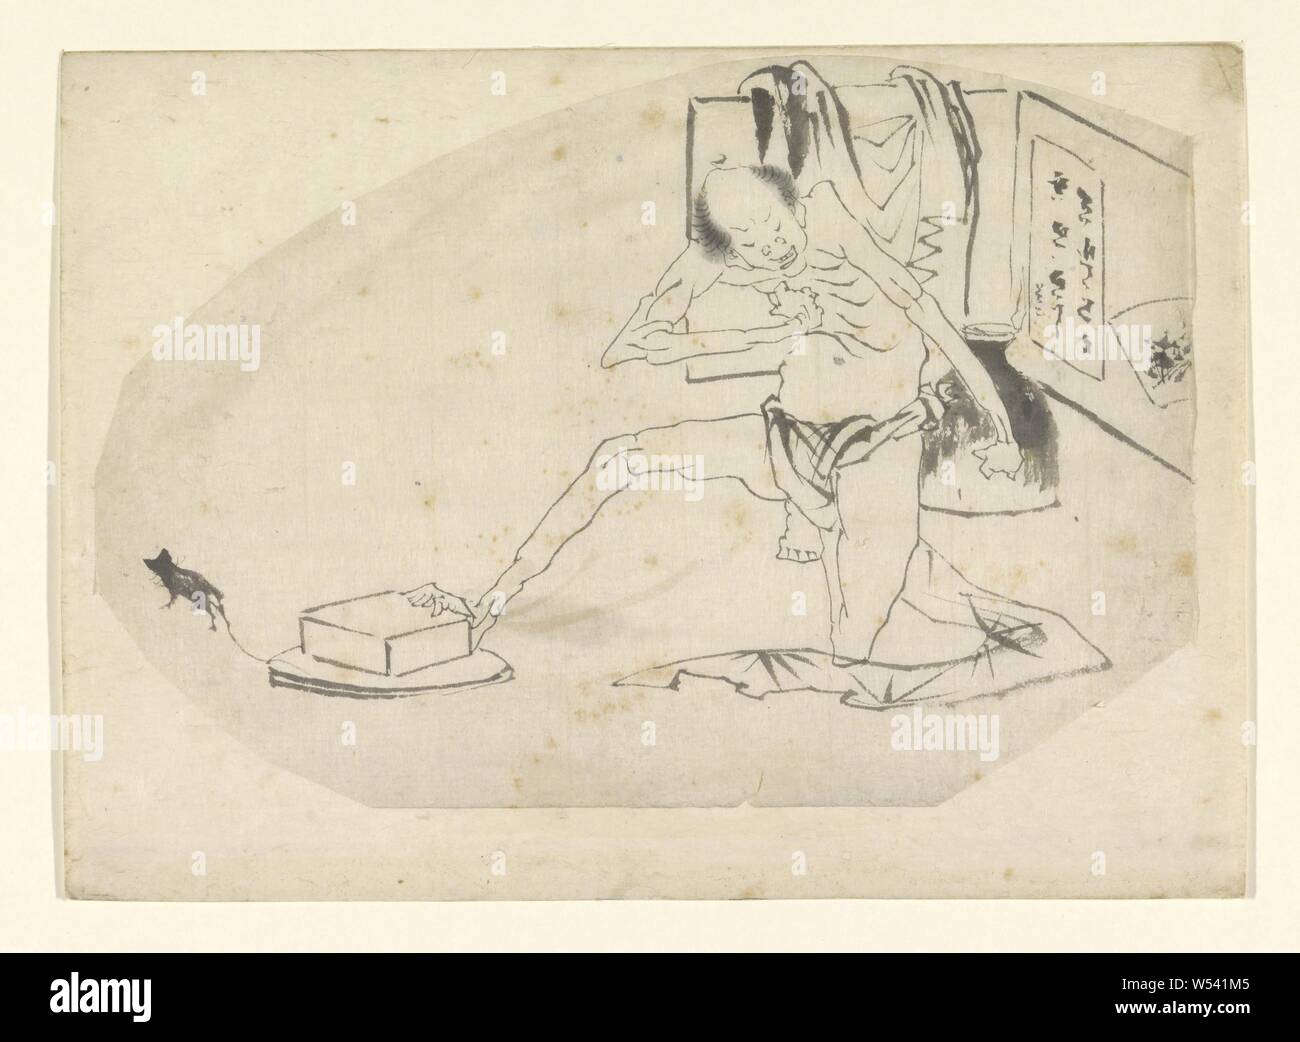 Mann im lendenschurz, einen Safe und eine Maus, unklare Darstellung einer knienden Mann im Lendenschurz, schiebe eine Box mit seinem Fuß, eine Maus weg läuft., Luft (einer der vier Elemente), das Meer (Marine), Nimbus, ie Regen Wolken, Katsushika Hokusai, Japan, C. 1700 - C. 1900, Pinsel, H 240 mm x B 330 mm Stockfoto